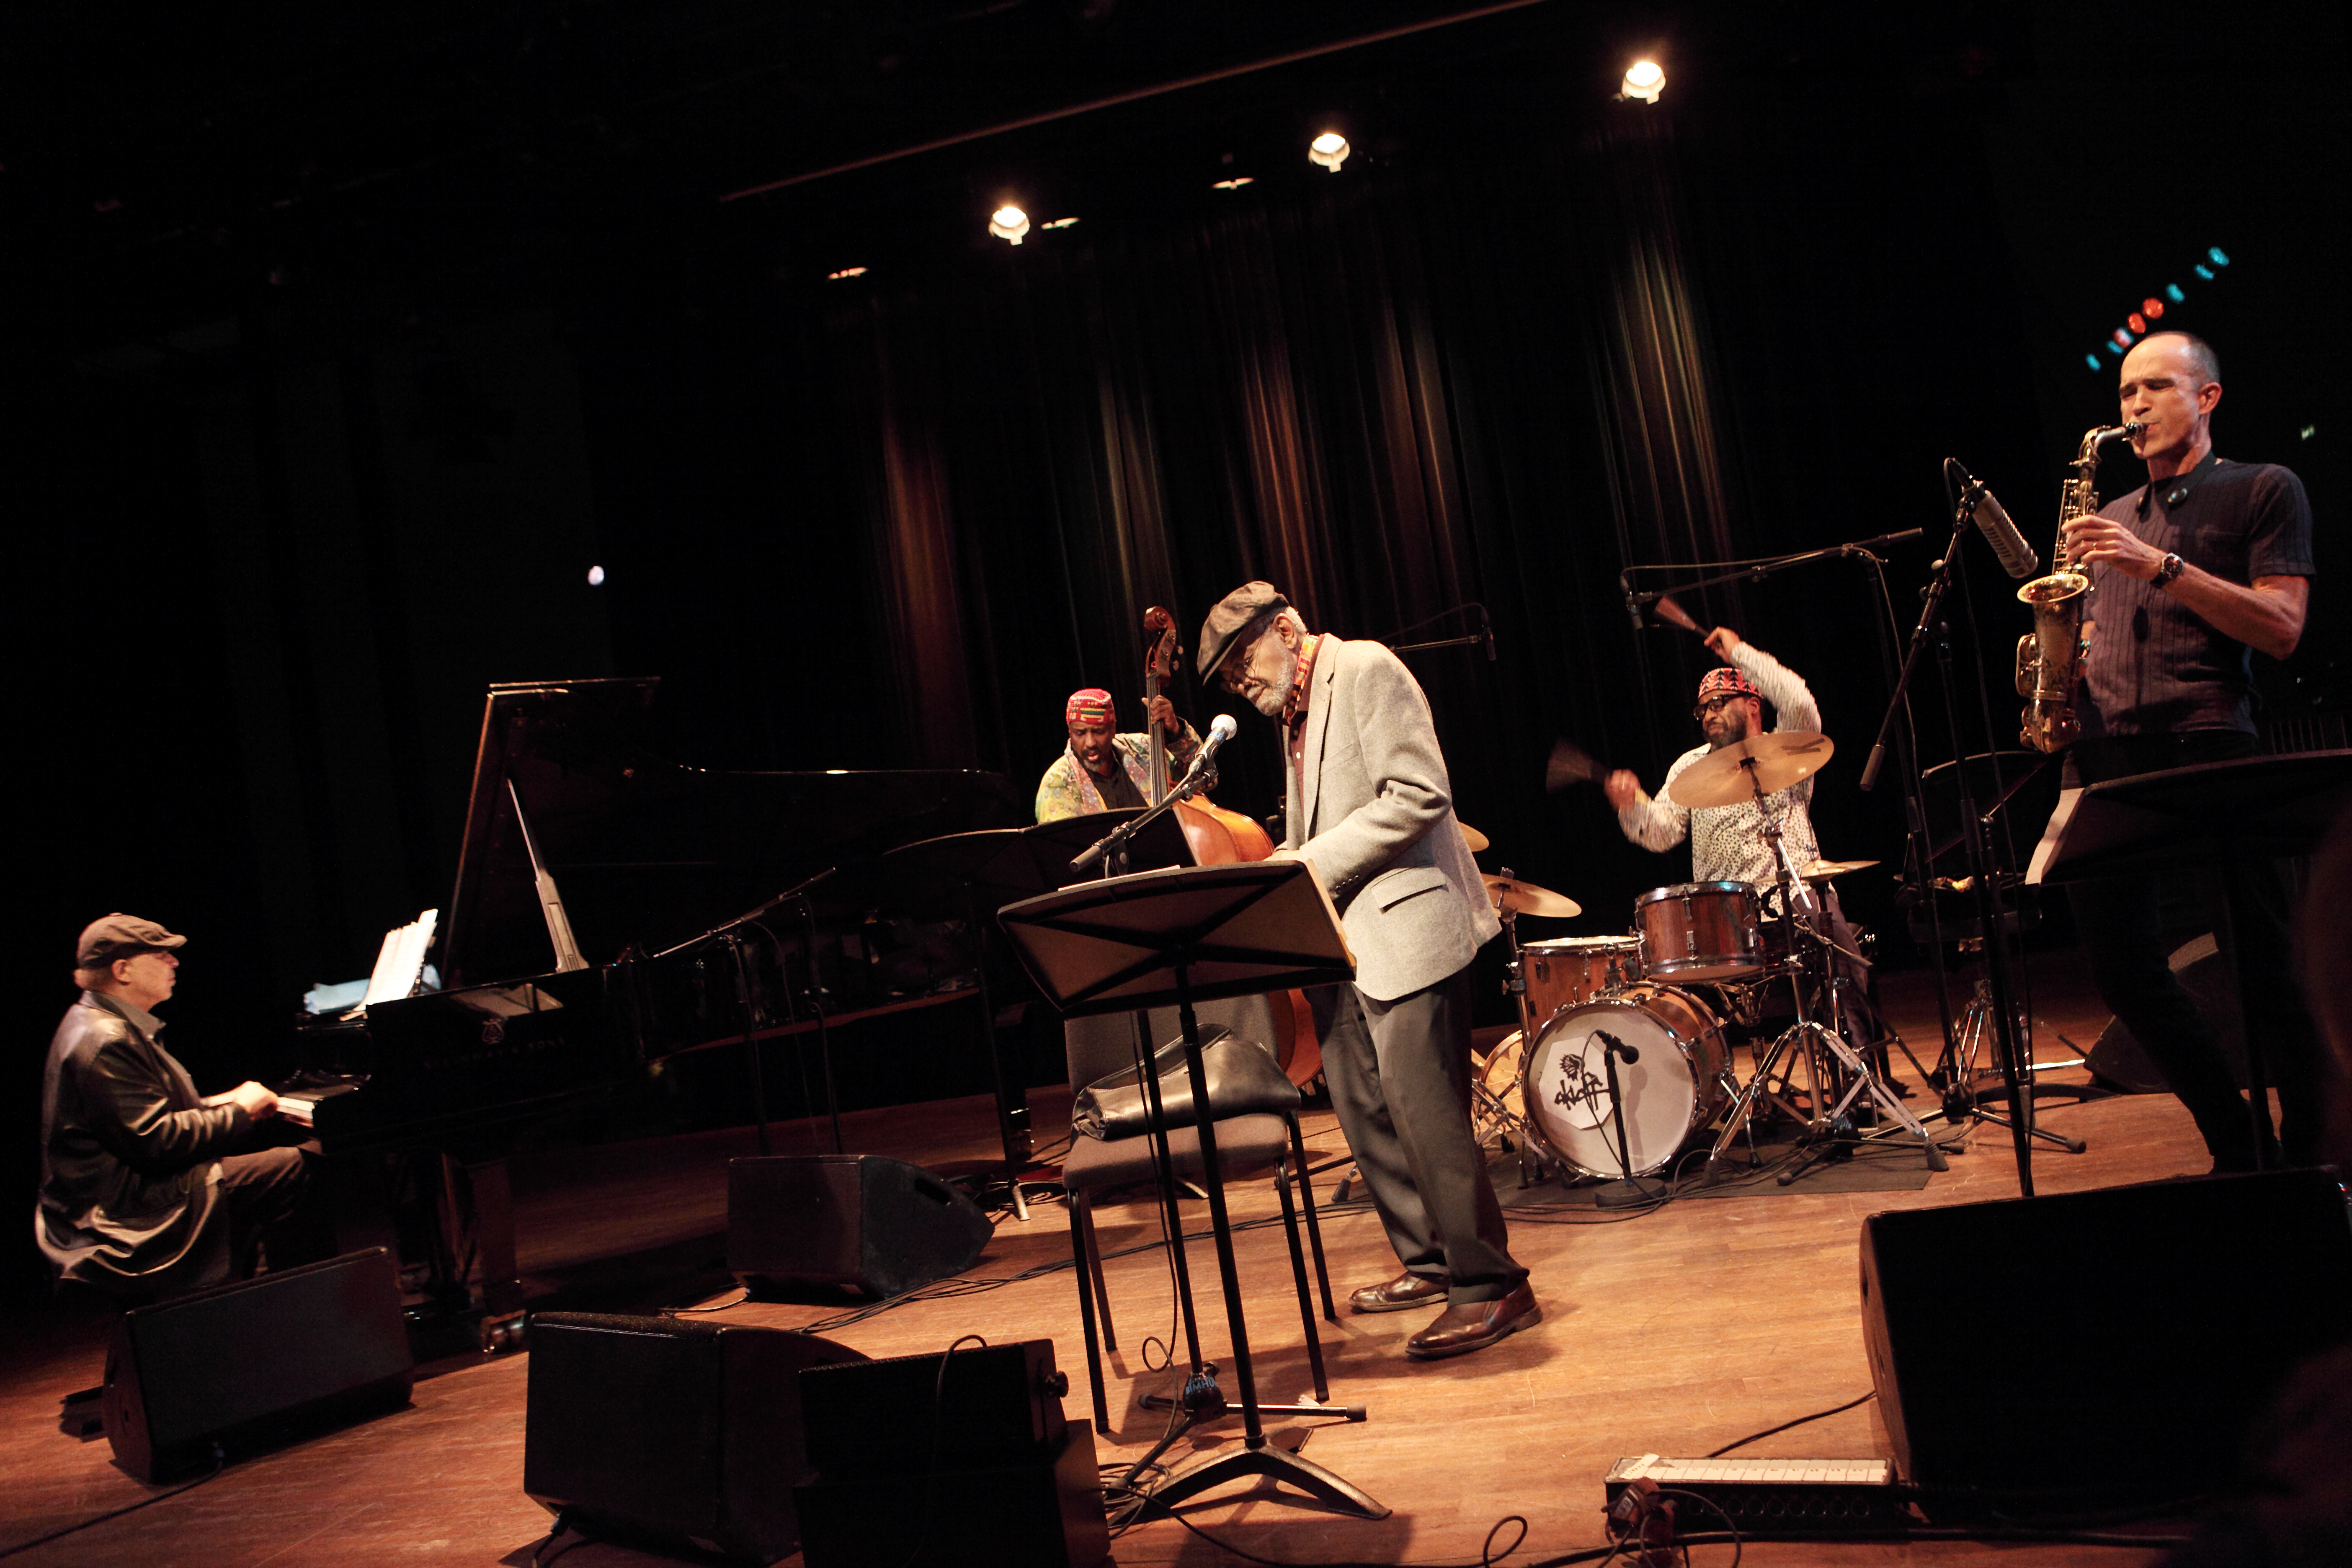 ステージでジャズミュージシャンのグループと演奏する詩人のアミリ・バラカ